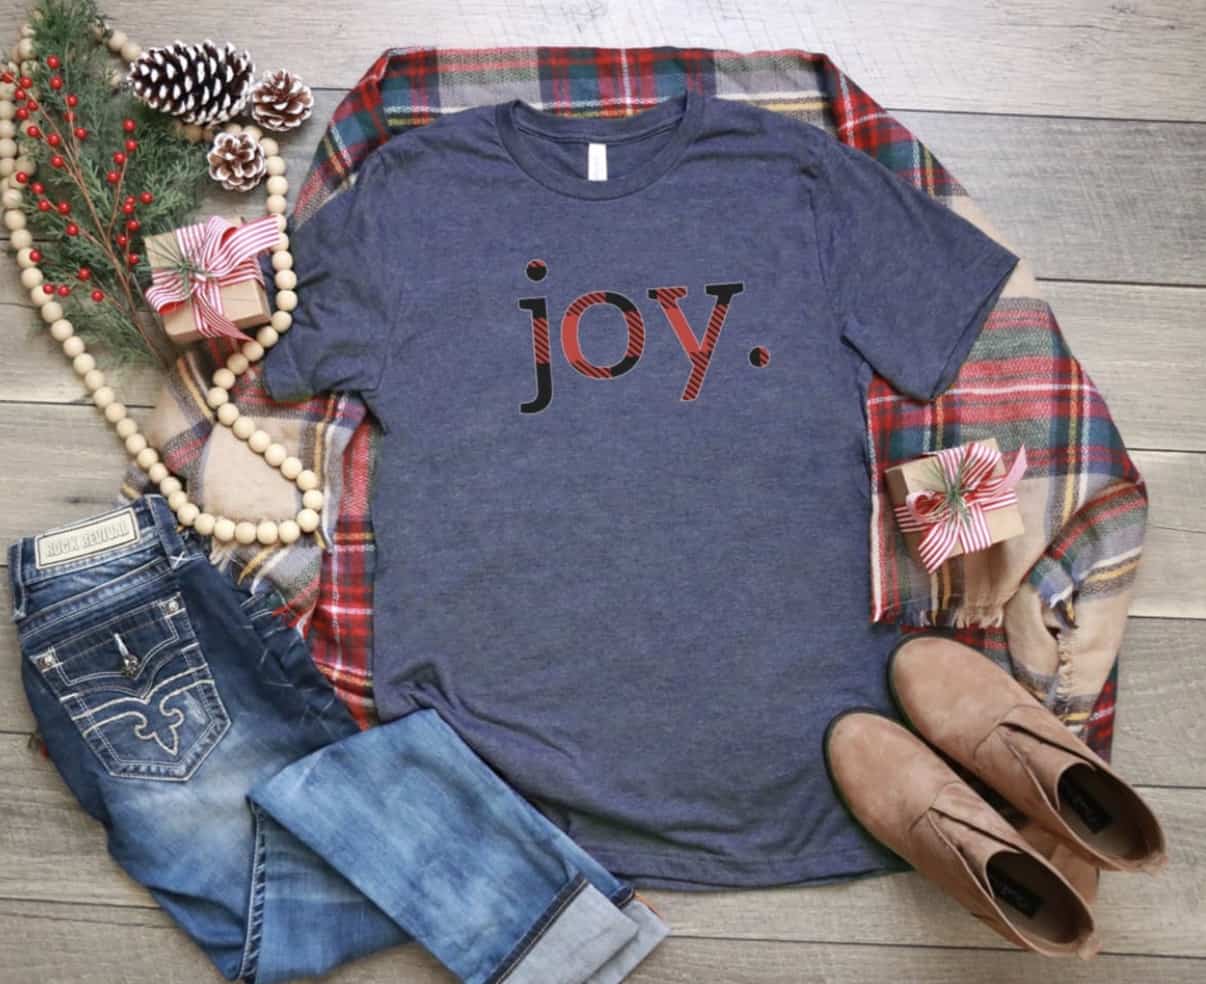 Joy t-shirt for Christmas